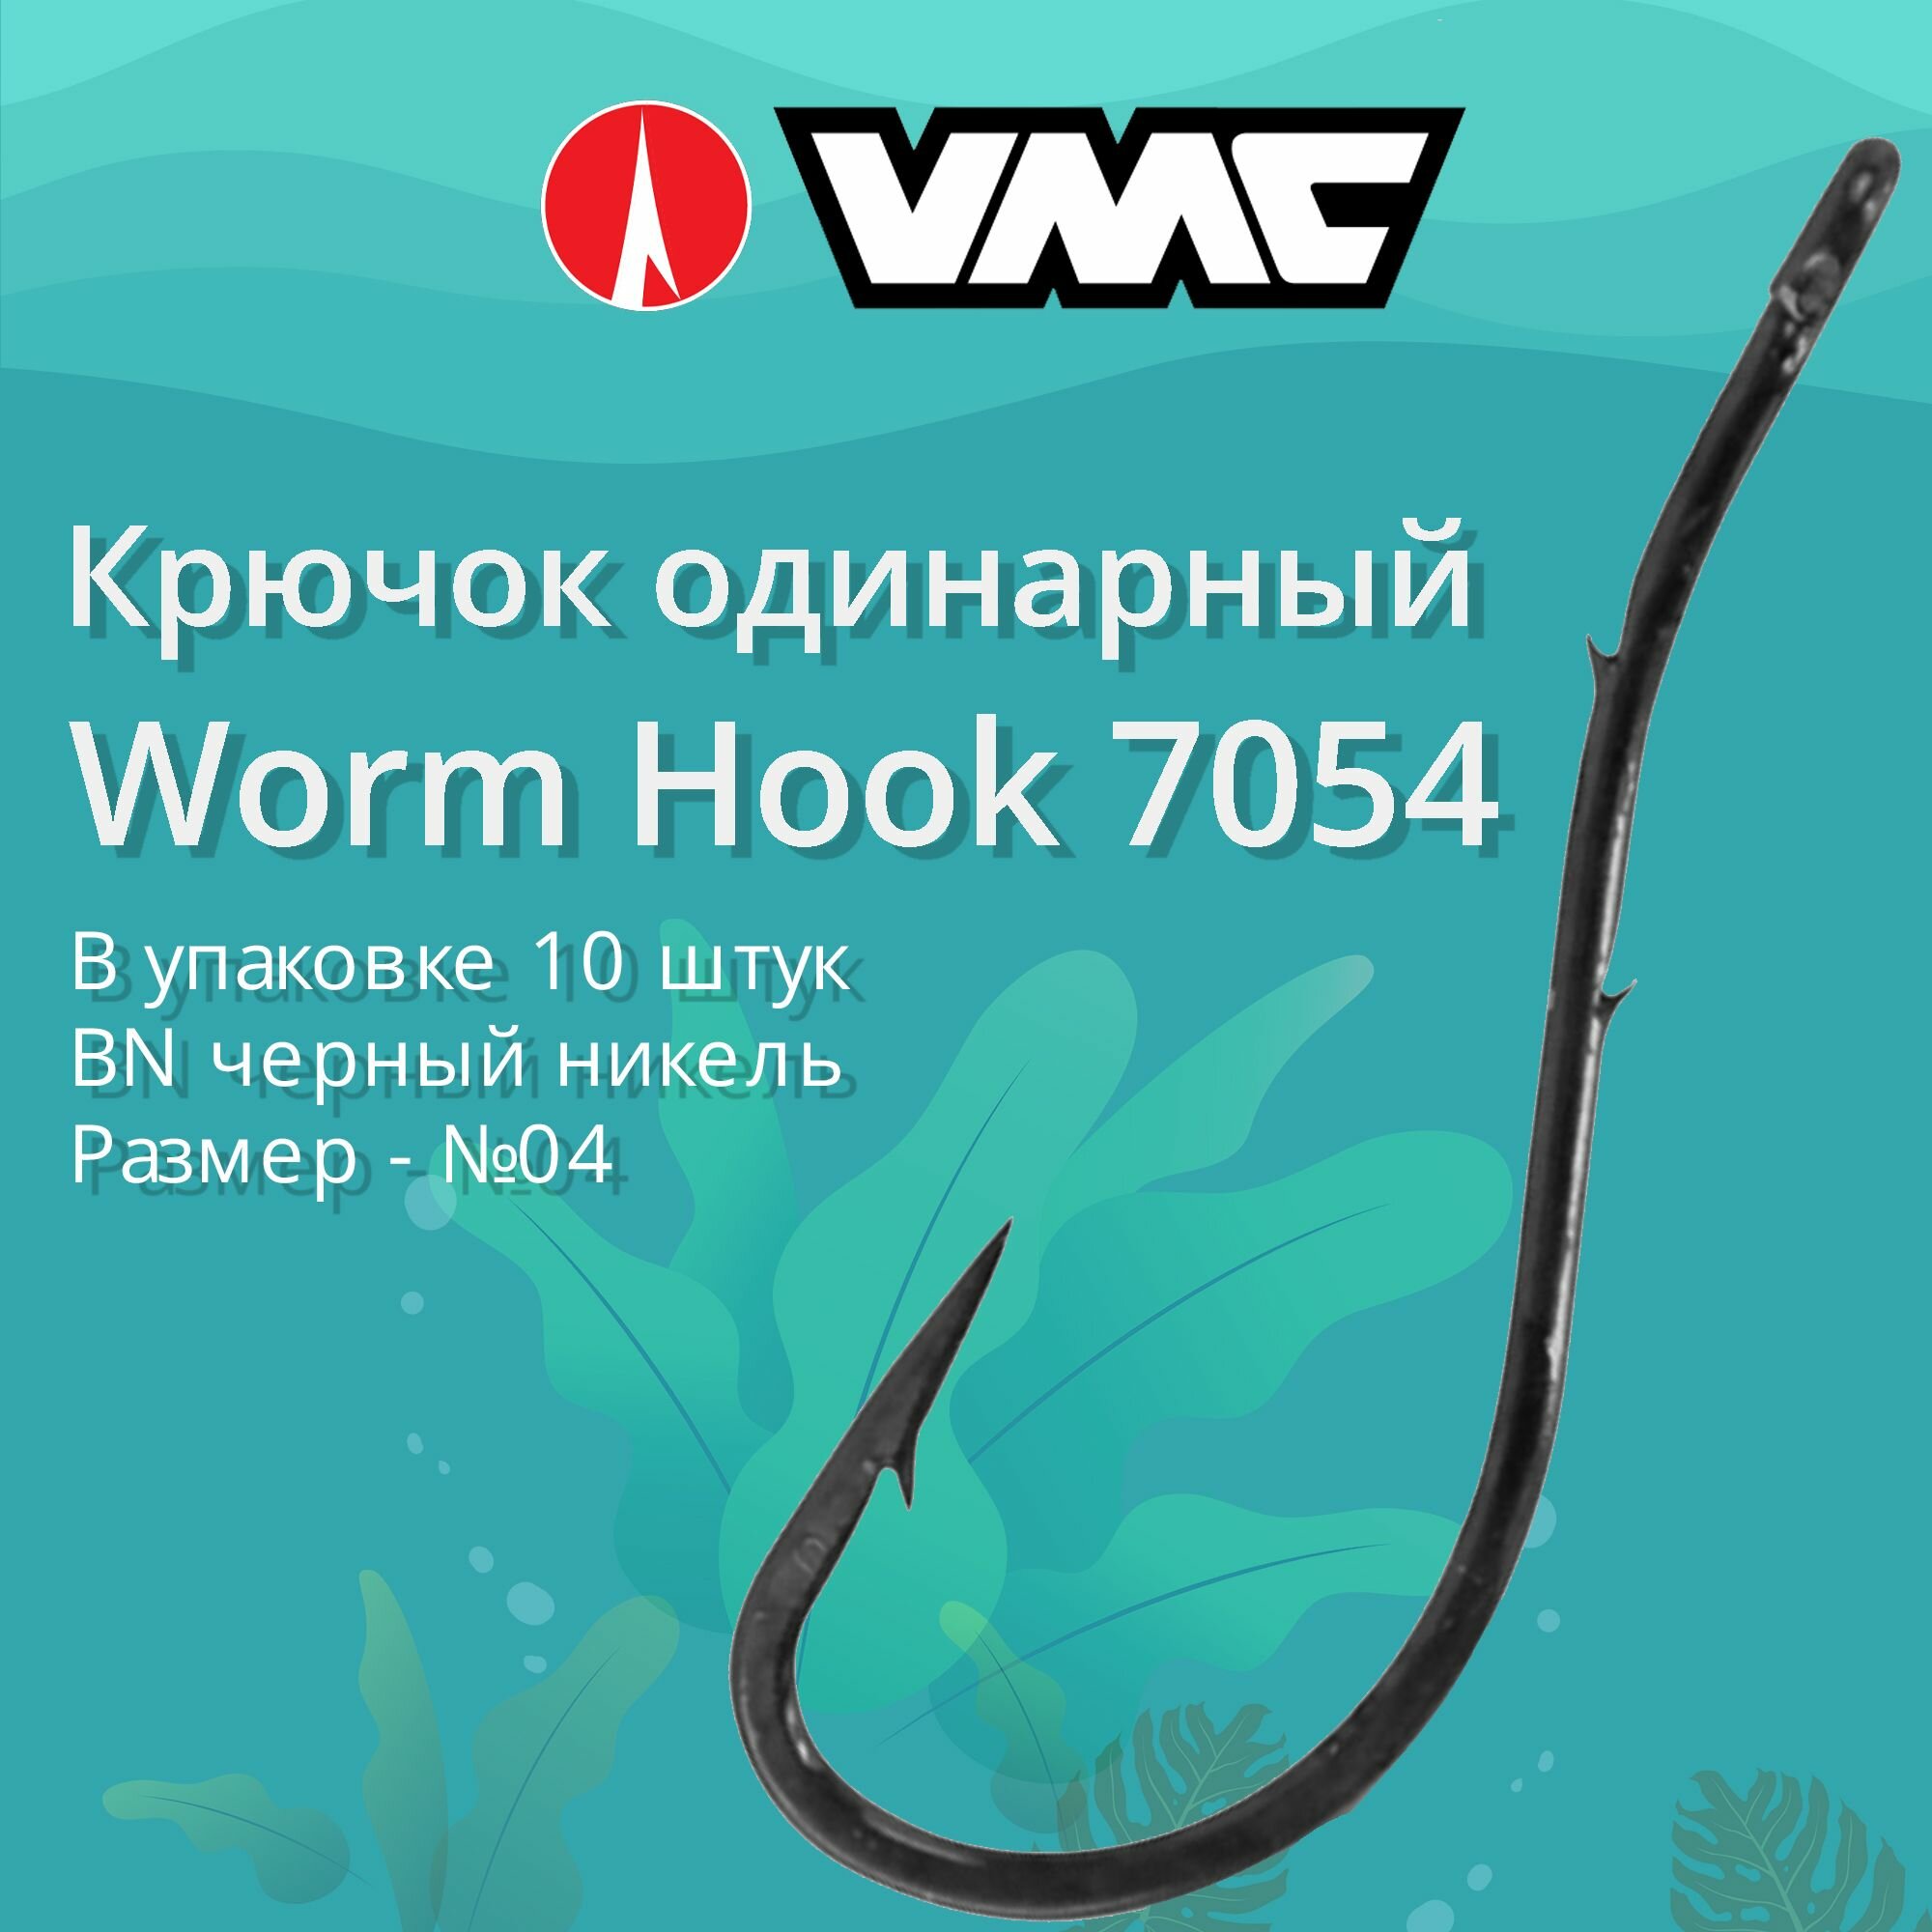 Крючки для рыбалки (одинарный) VMC Worm Hook 7054 BN (черн. никель) №04 упаковка 10 штук